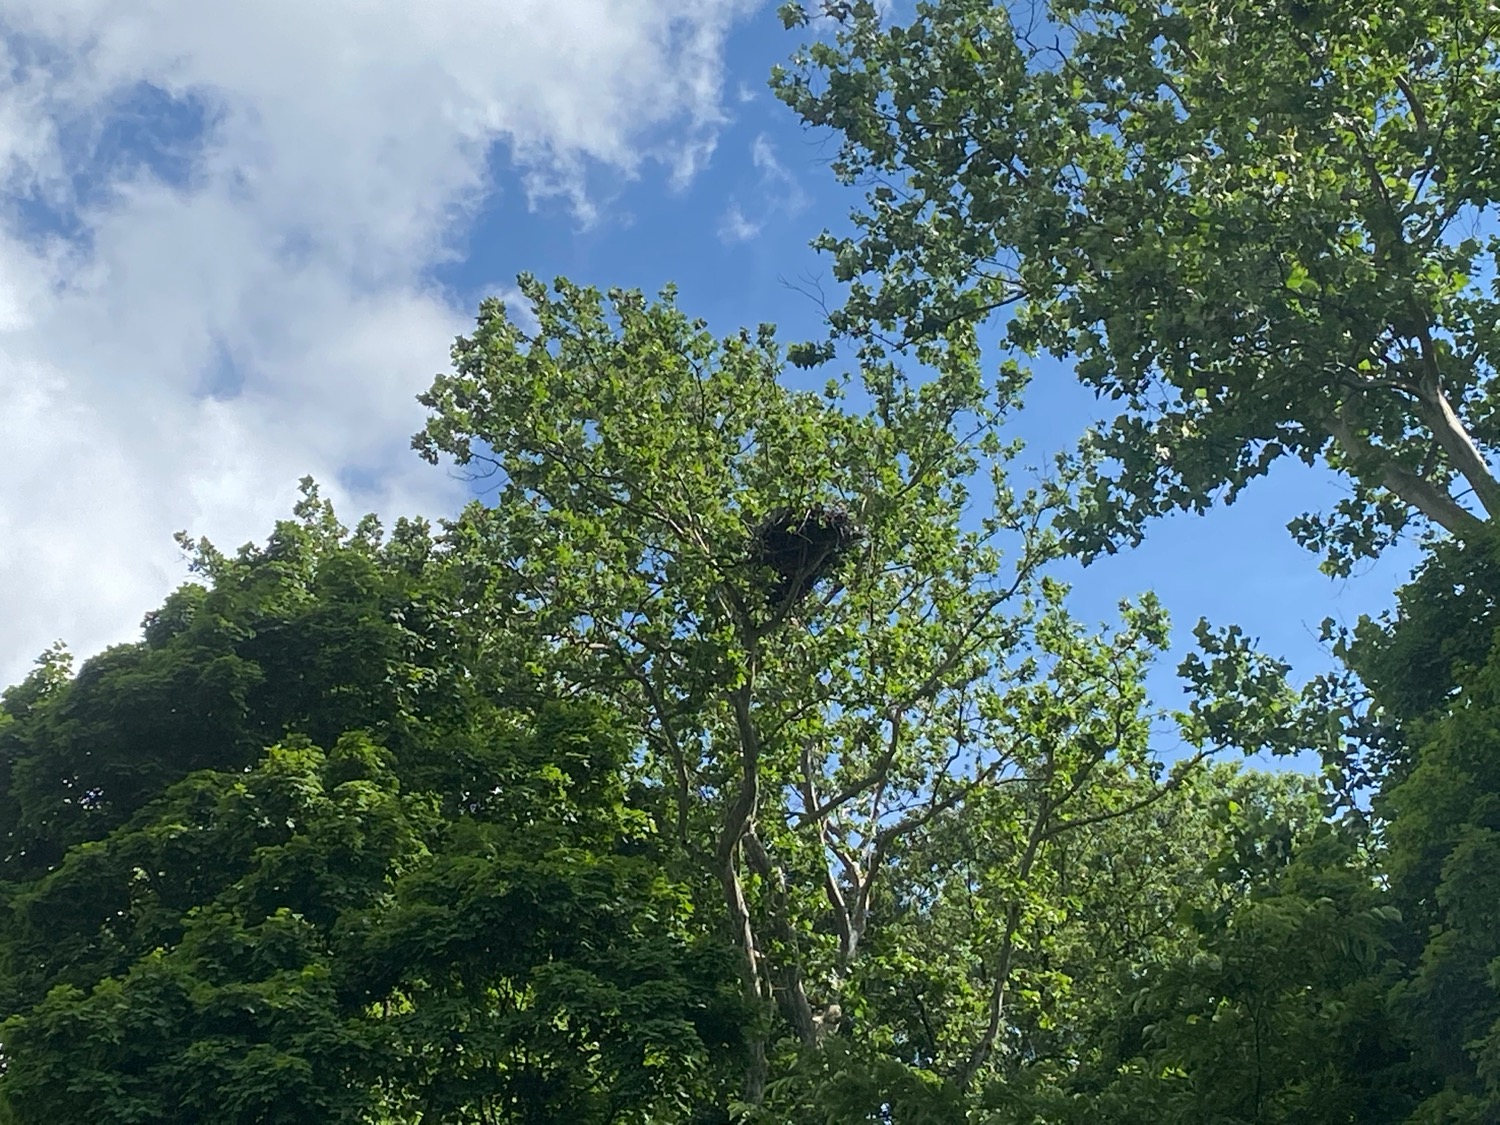 Carillon Park's Bald Eagle Nest